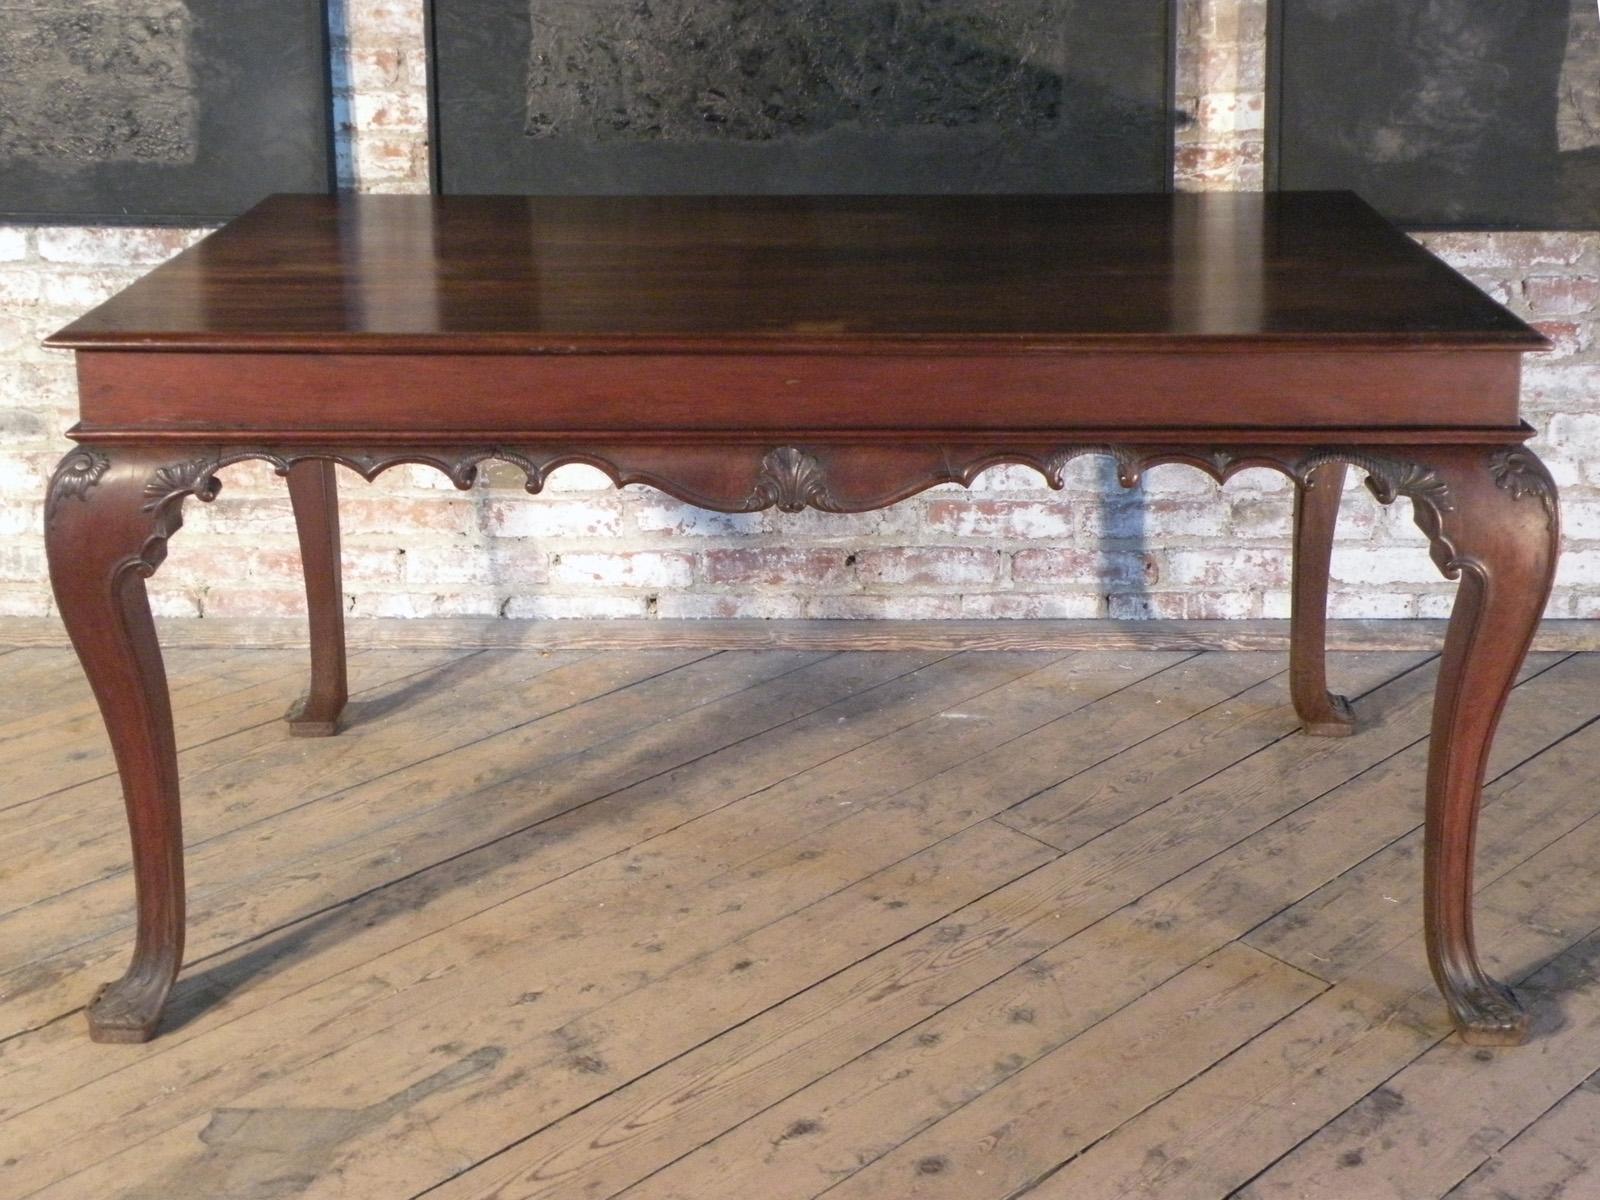 Console ou table d'appoint portugaise du 18e siècle, de la période rococo, représentant une influence du design Chippendale. Les quatre pieds cabriole sont reliés sur trois côtés par un profil ondulé, centré par un motif de coquille, avec une frise